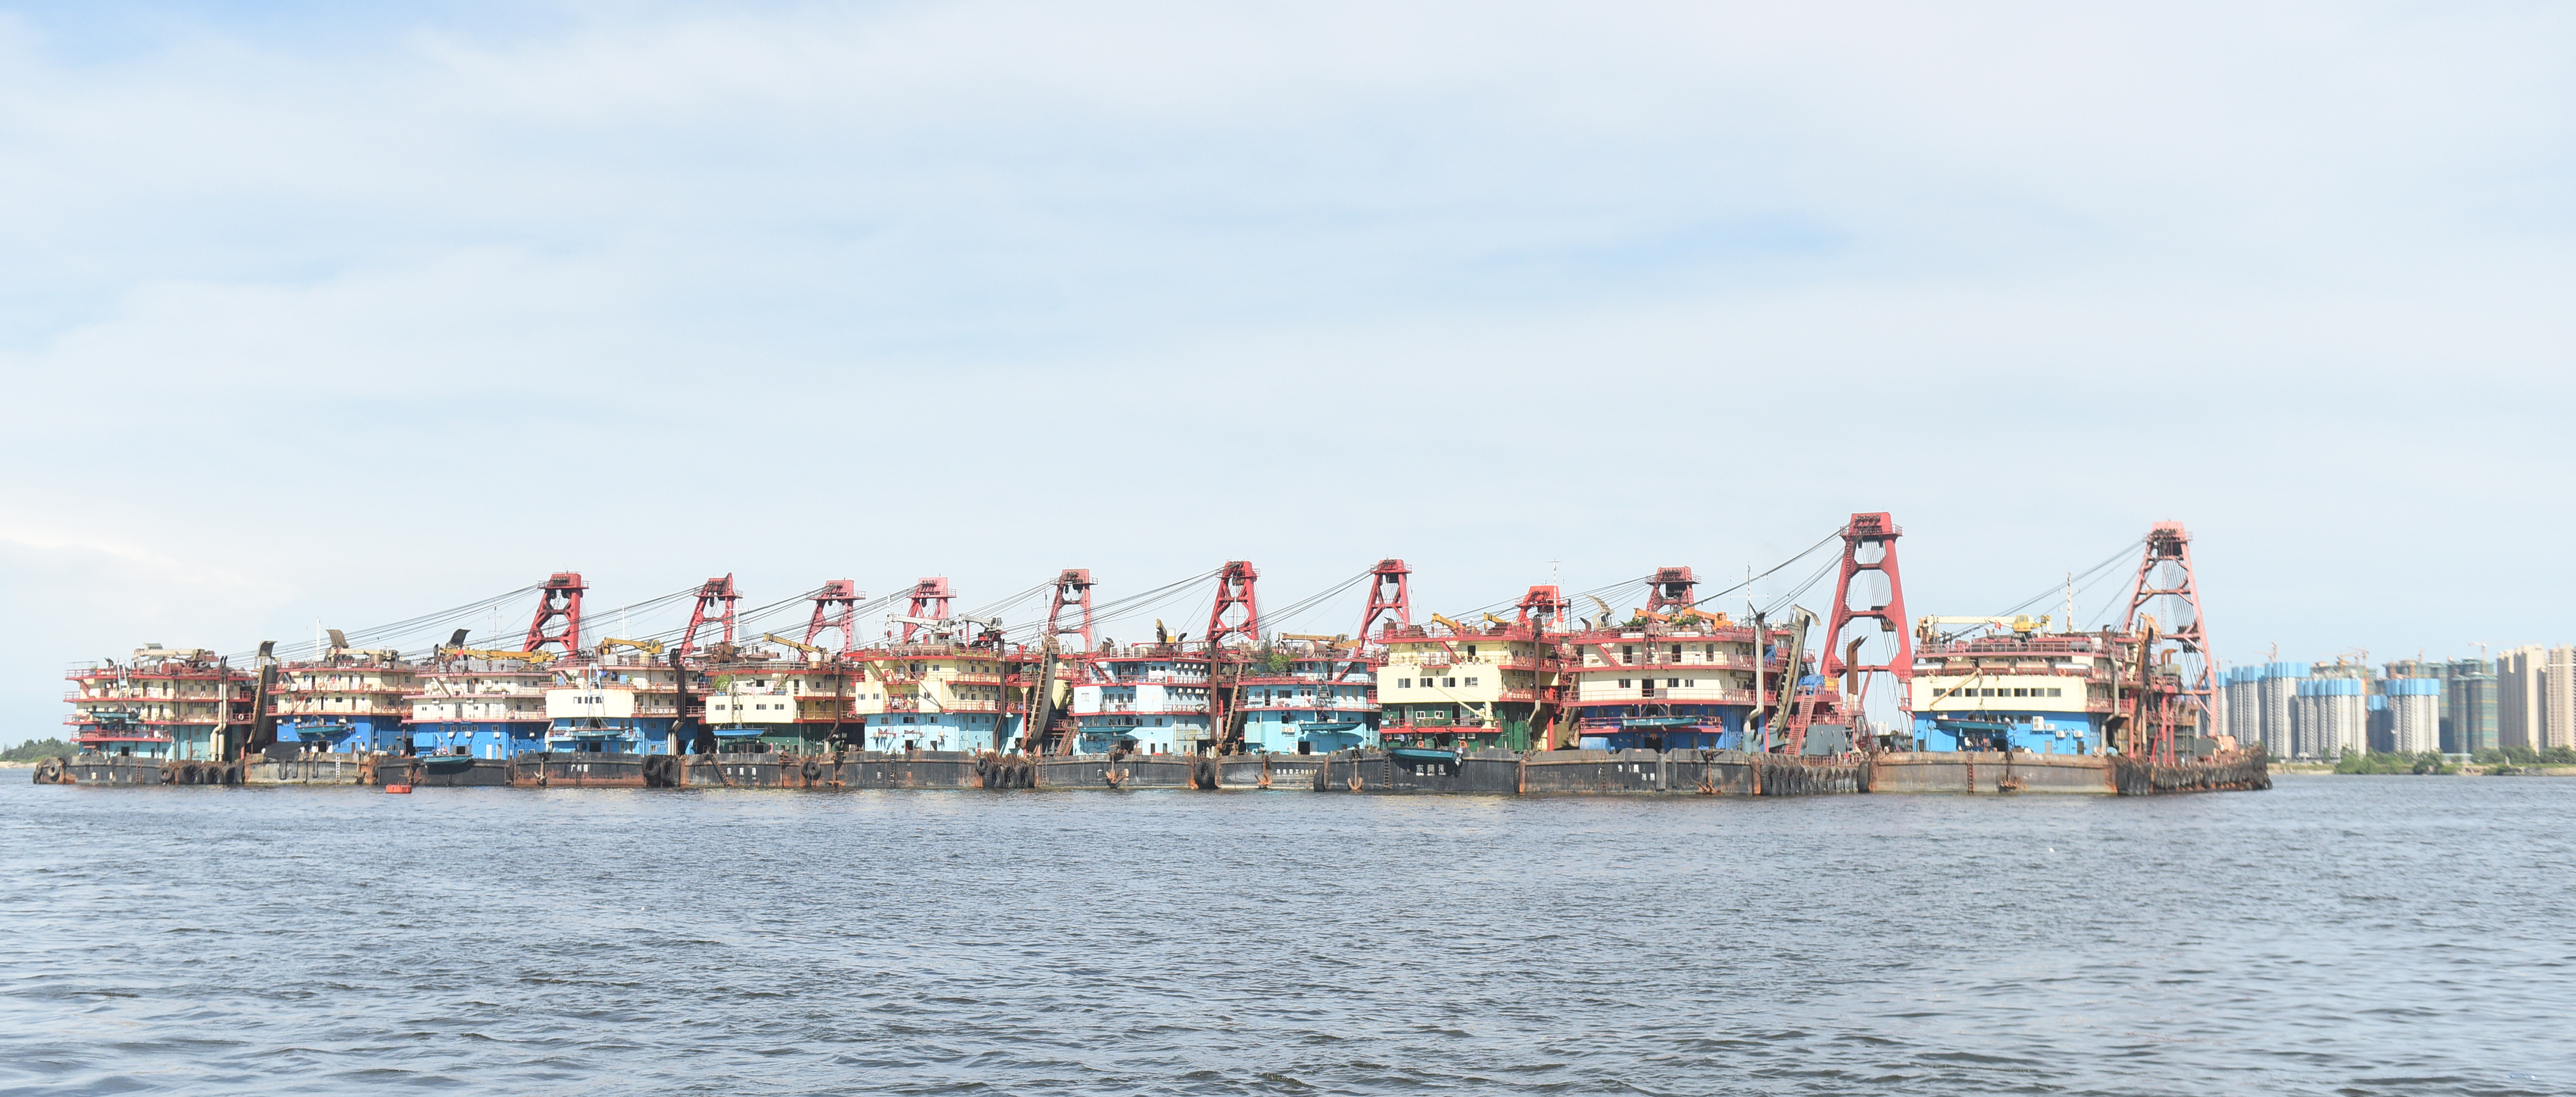 湛江港489艘船舶全部撤离码头防台